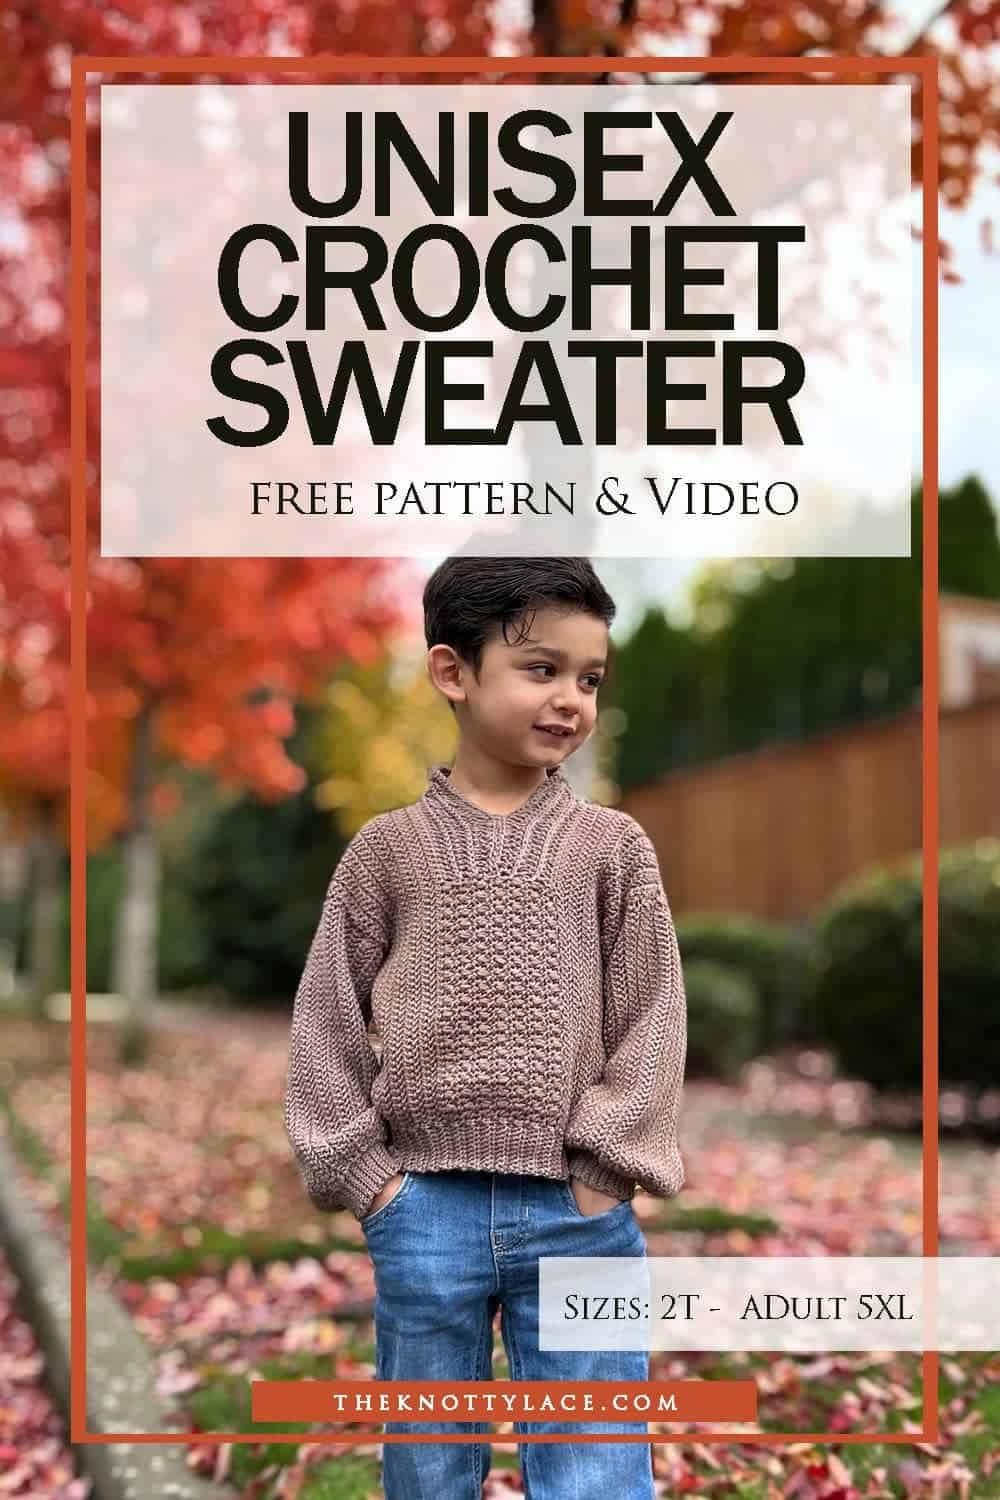 Unisex Crochet Sweater Free Pattern & Video